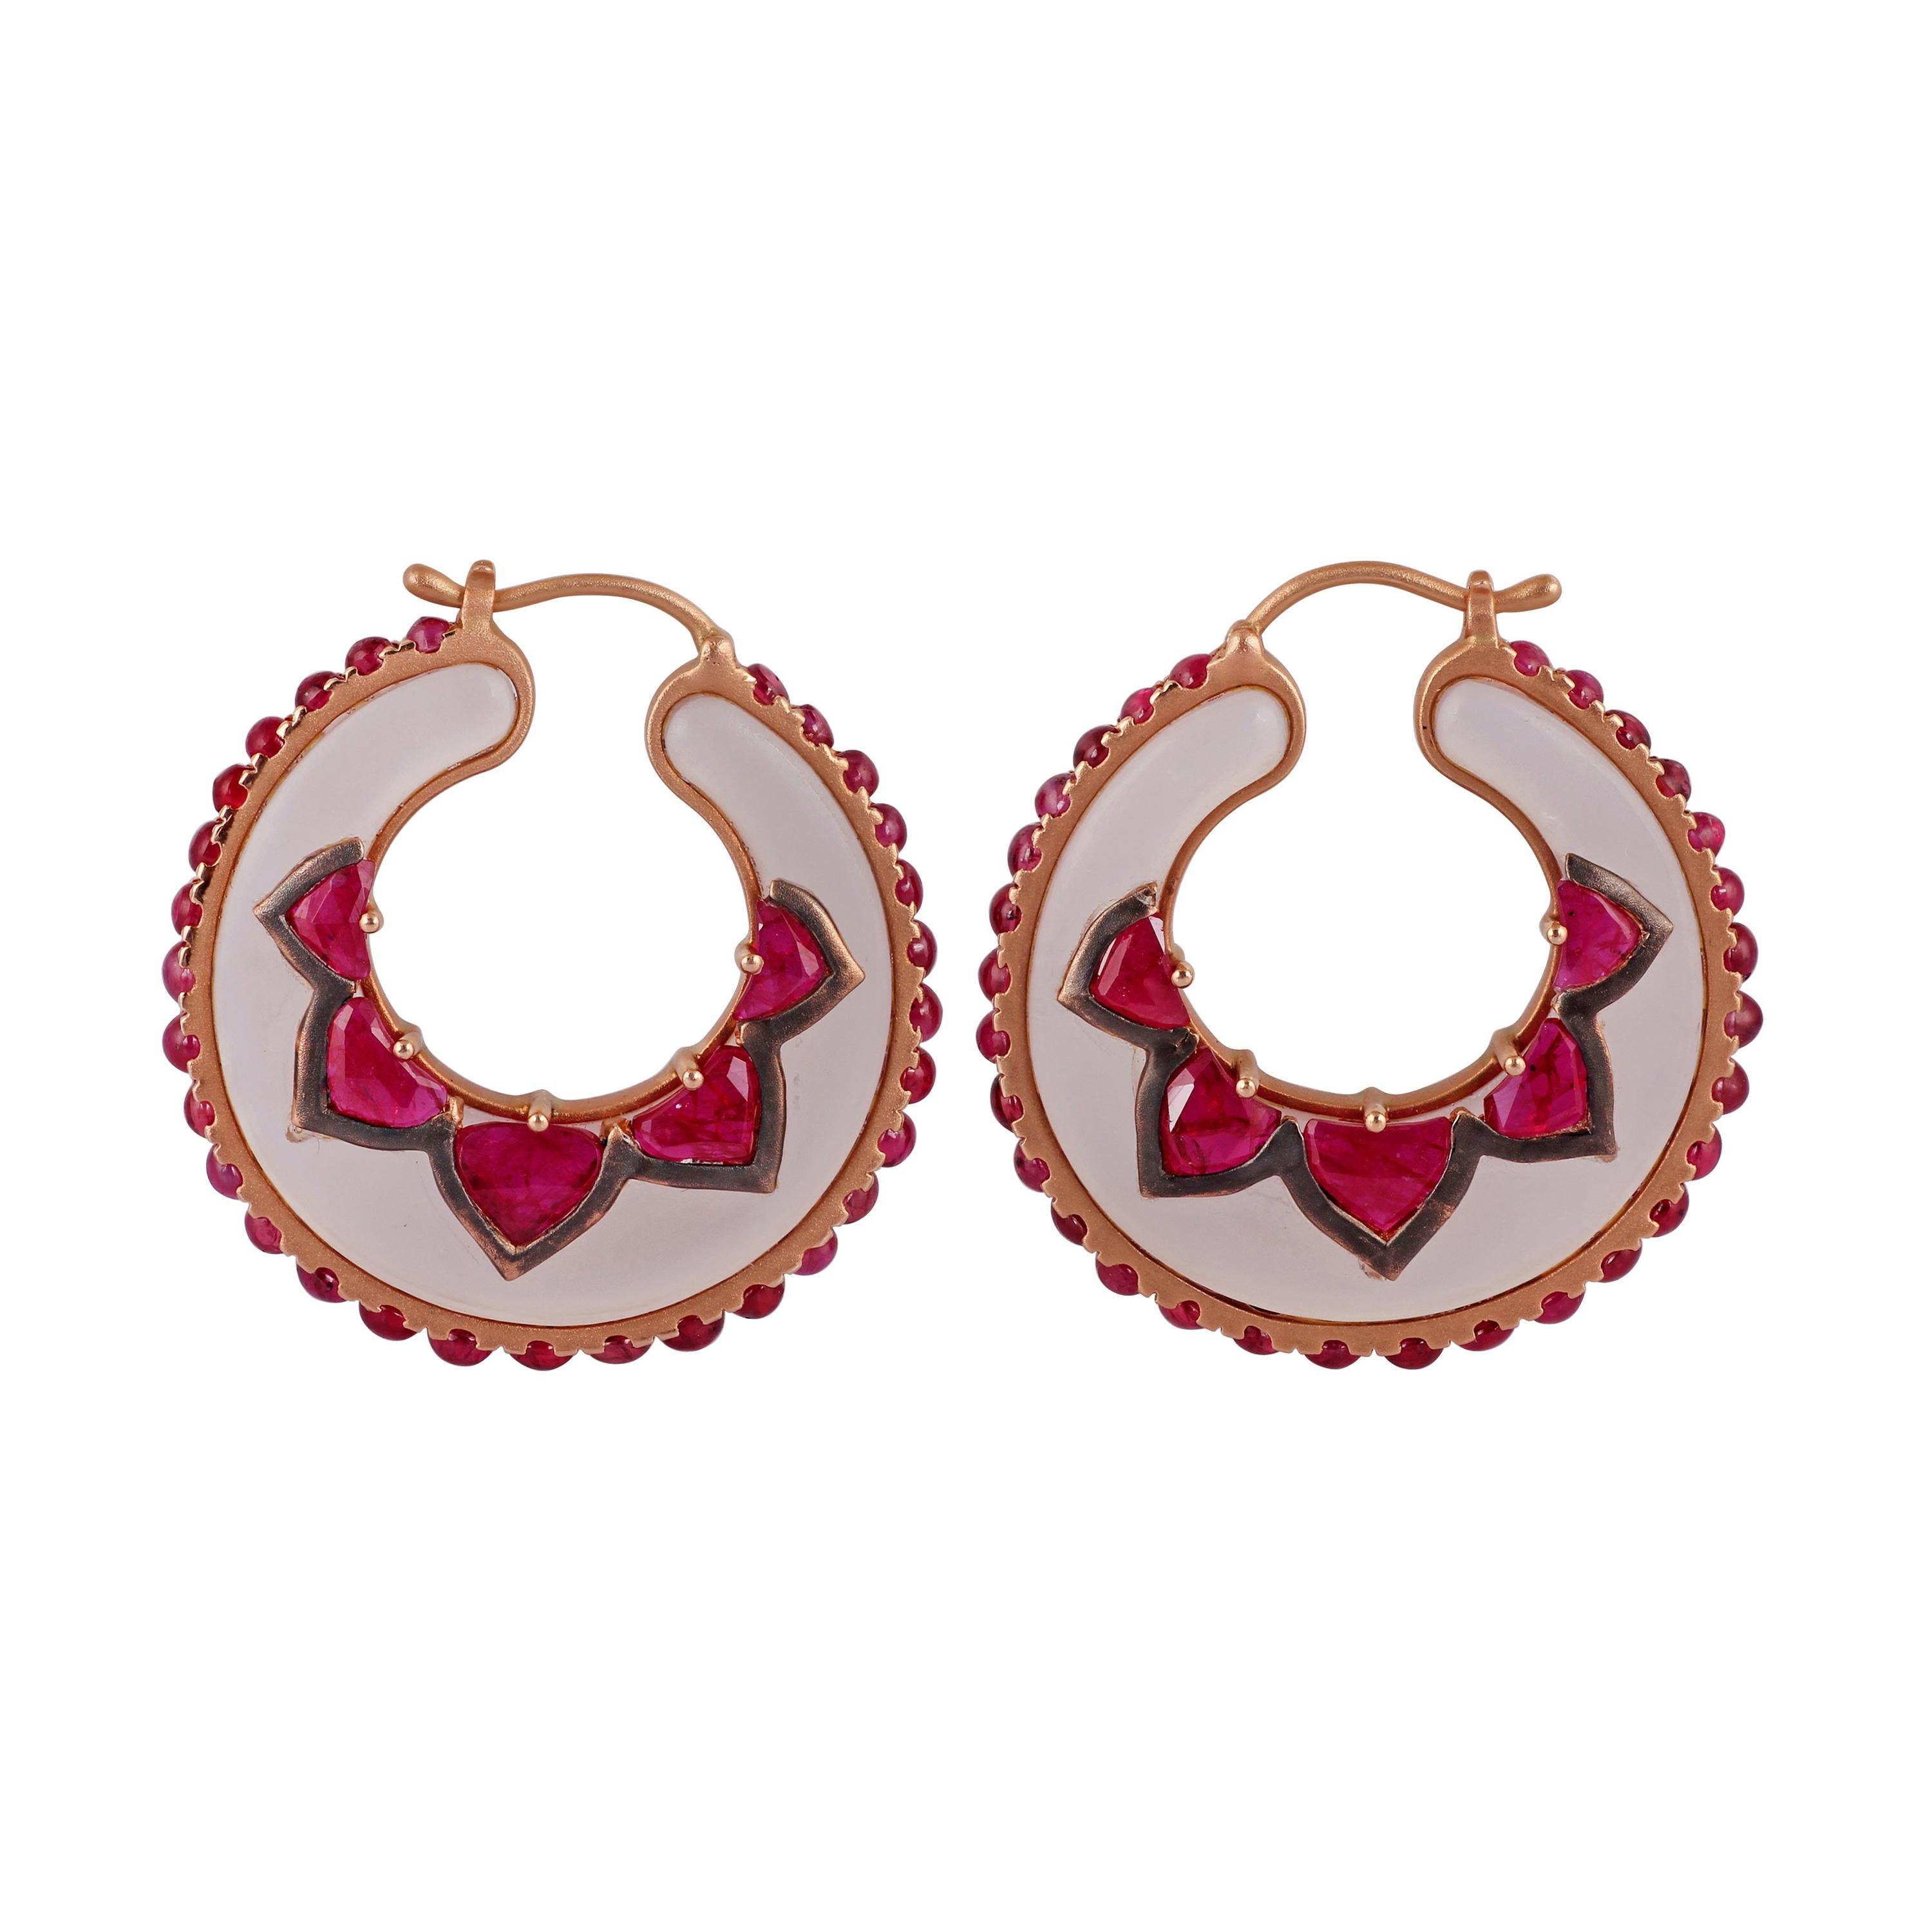 Rose Quartz & Ruby Earrings Studded in 18k Rose Gold